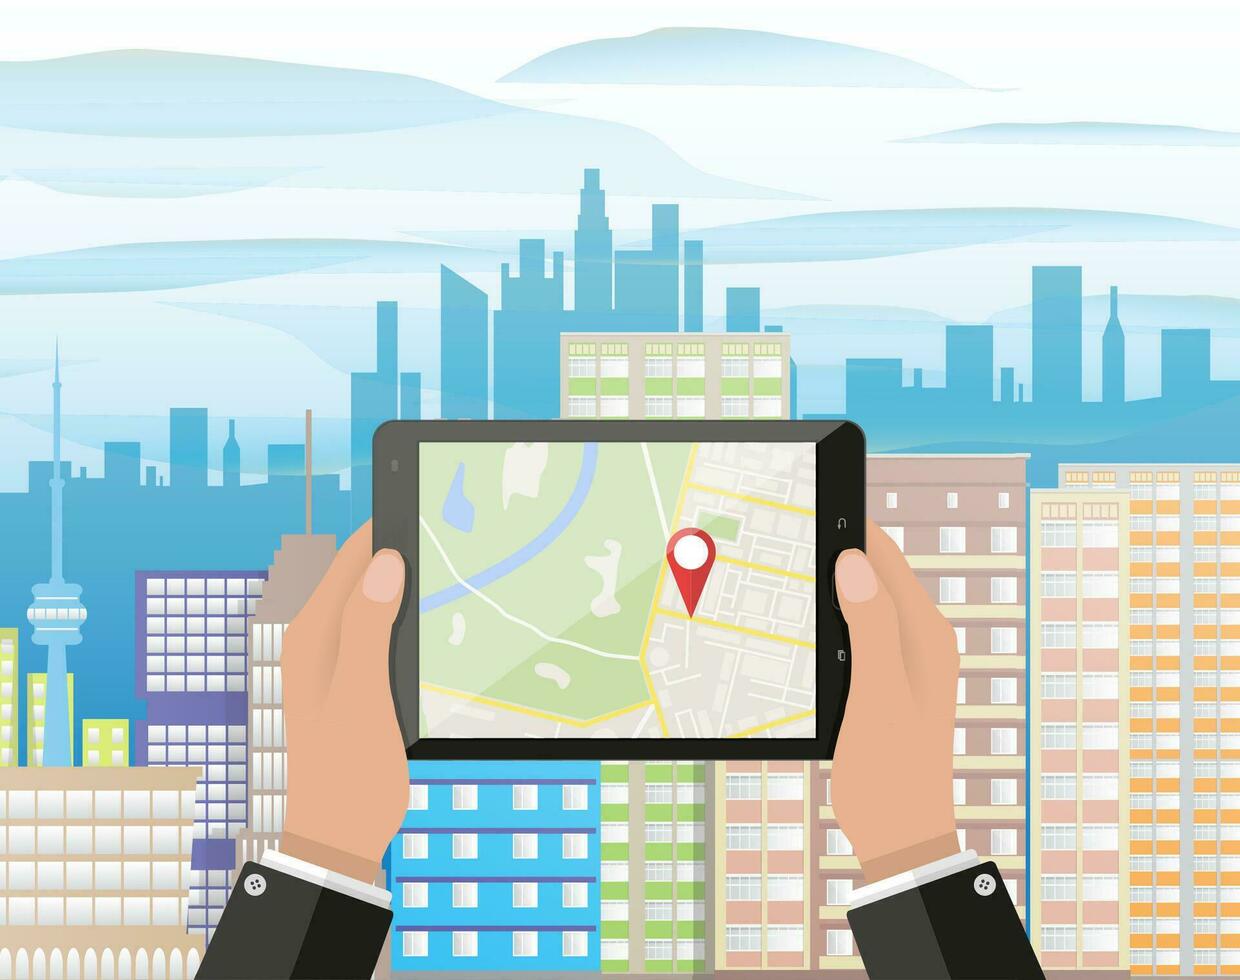 Karikatur Hand hält Smartphone oder Tablette pc mit Navigation App gegen Stadtbild im Tag. Navigation Konzept. eben Design. Vektor Illustration.